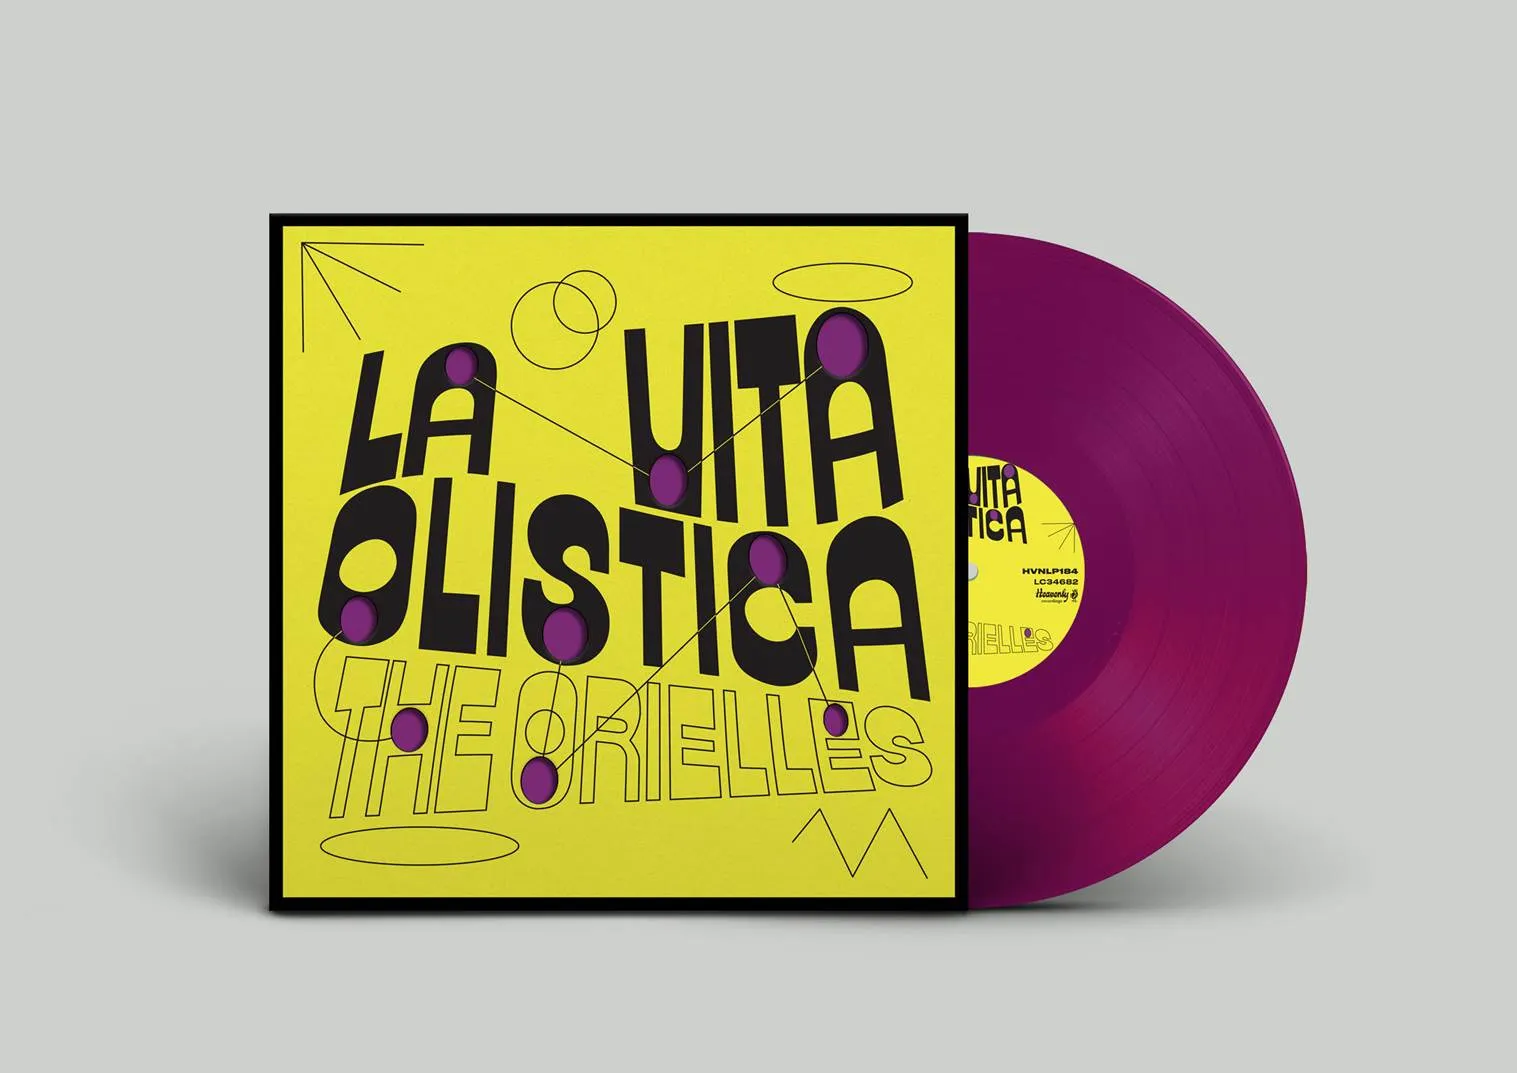 <strong>The Orielles - La Vita Ollistica - Original Soundtrack</strong> (Vinyl LP - purple)